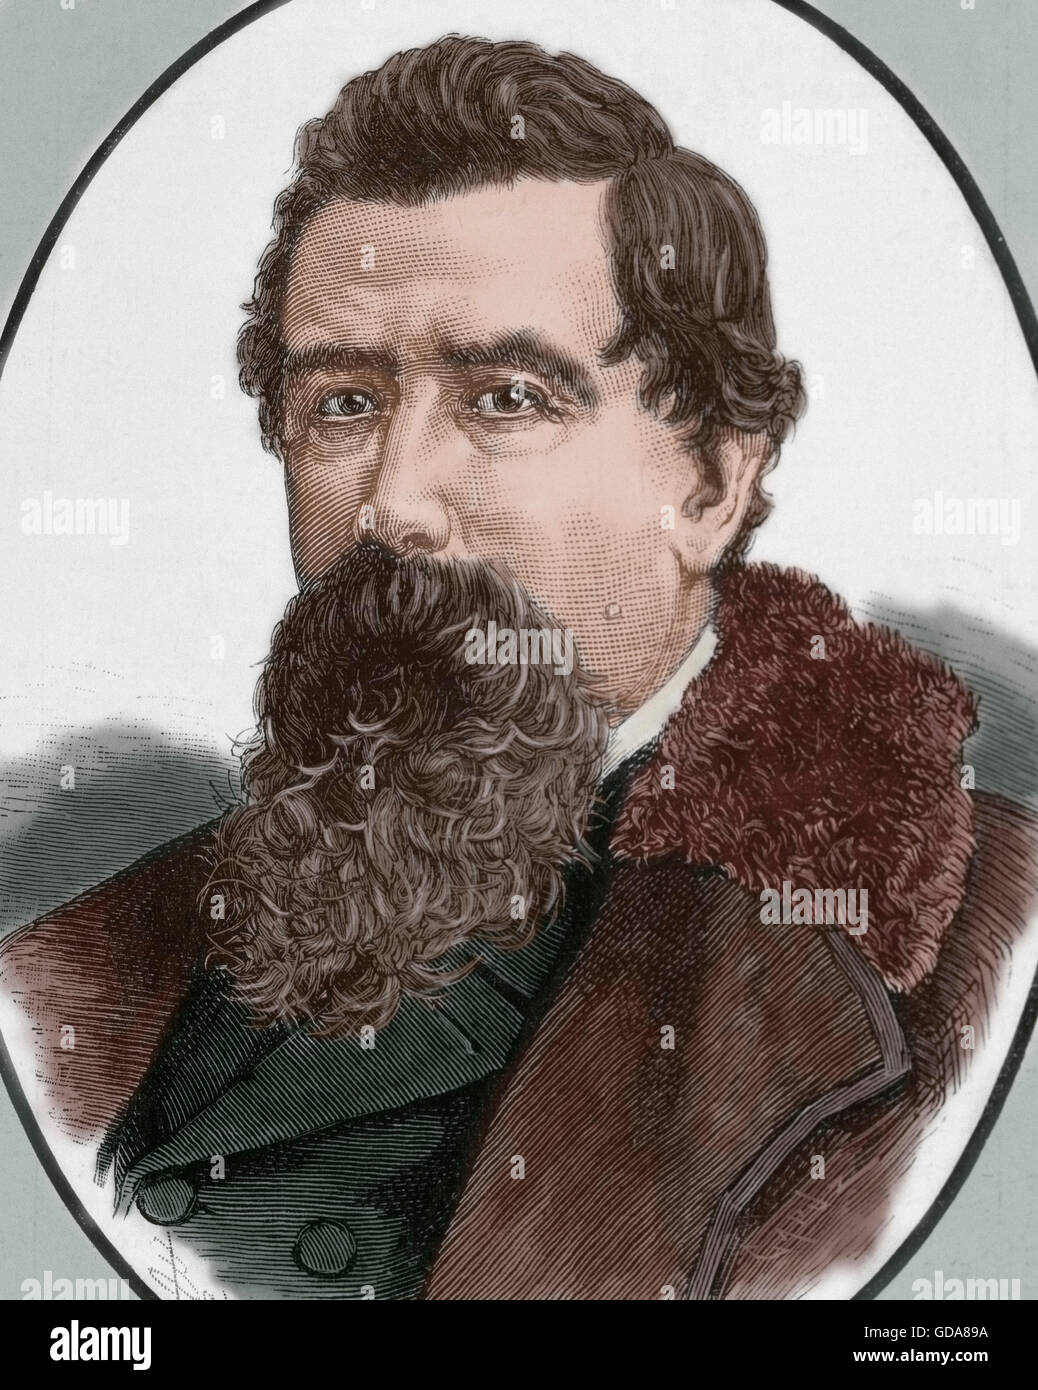 Amilcare Ponchielli (1834-1886). Compositor italiano. Retrato. Grabado. Coloreada. Foto de stock